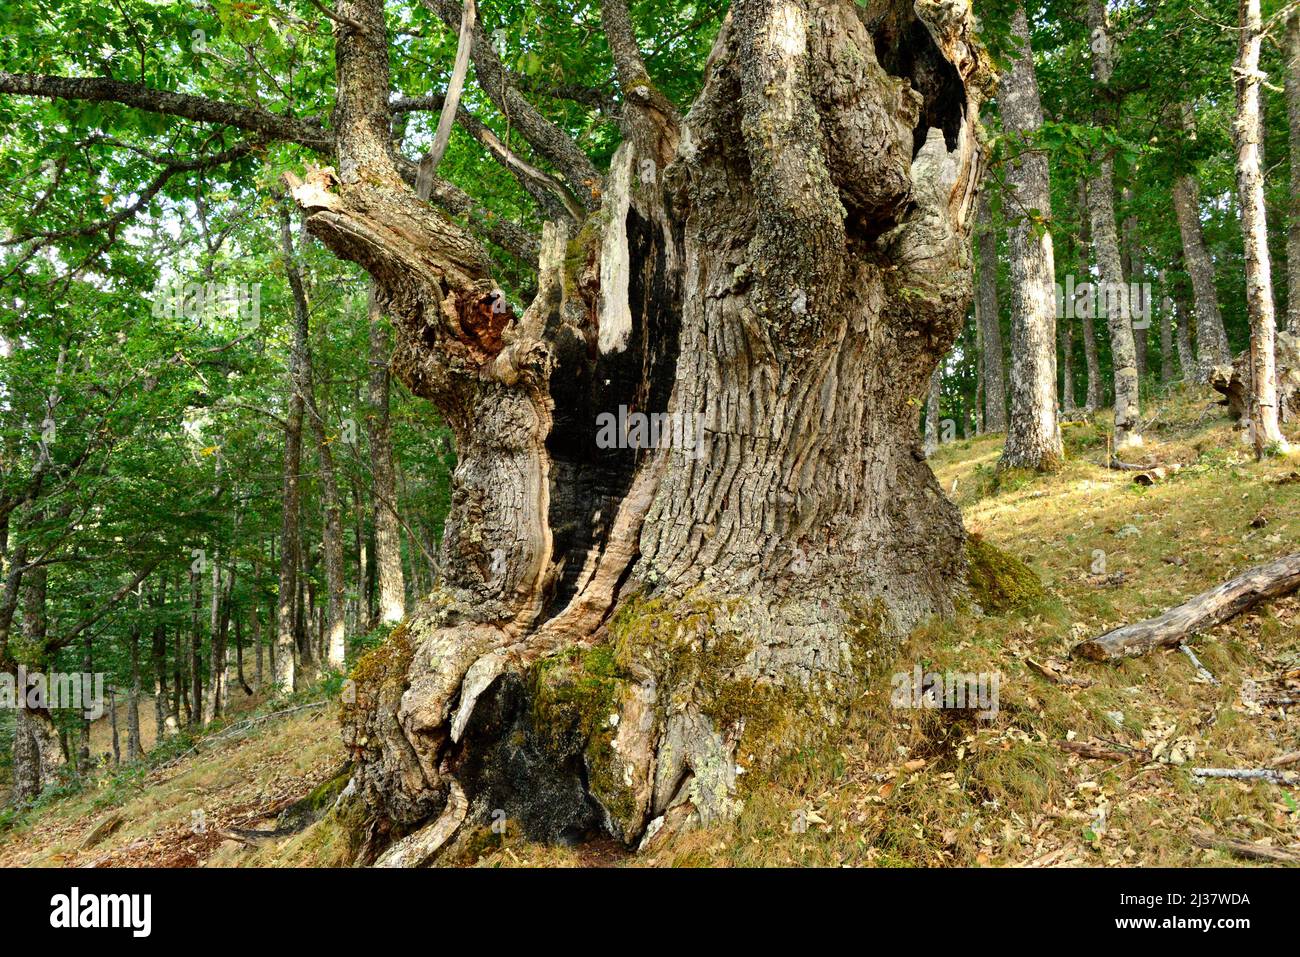 El roble sessile (Quercus petraea) es un árbol caducifolio nativo de Europa central, montañas del sur de Europa y Asia Menor. Esta foto fue tomada en Foto de stock